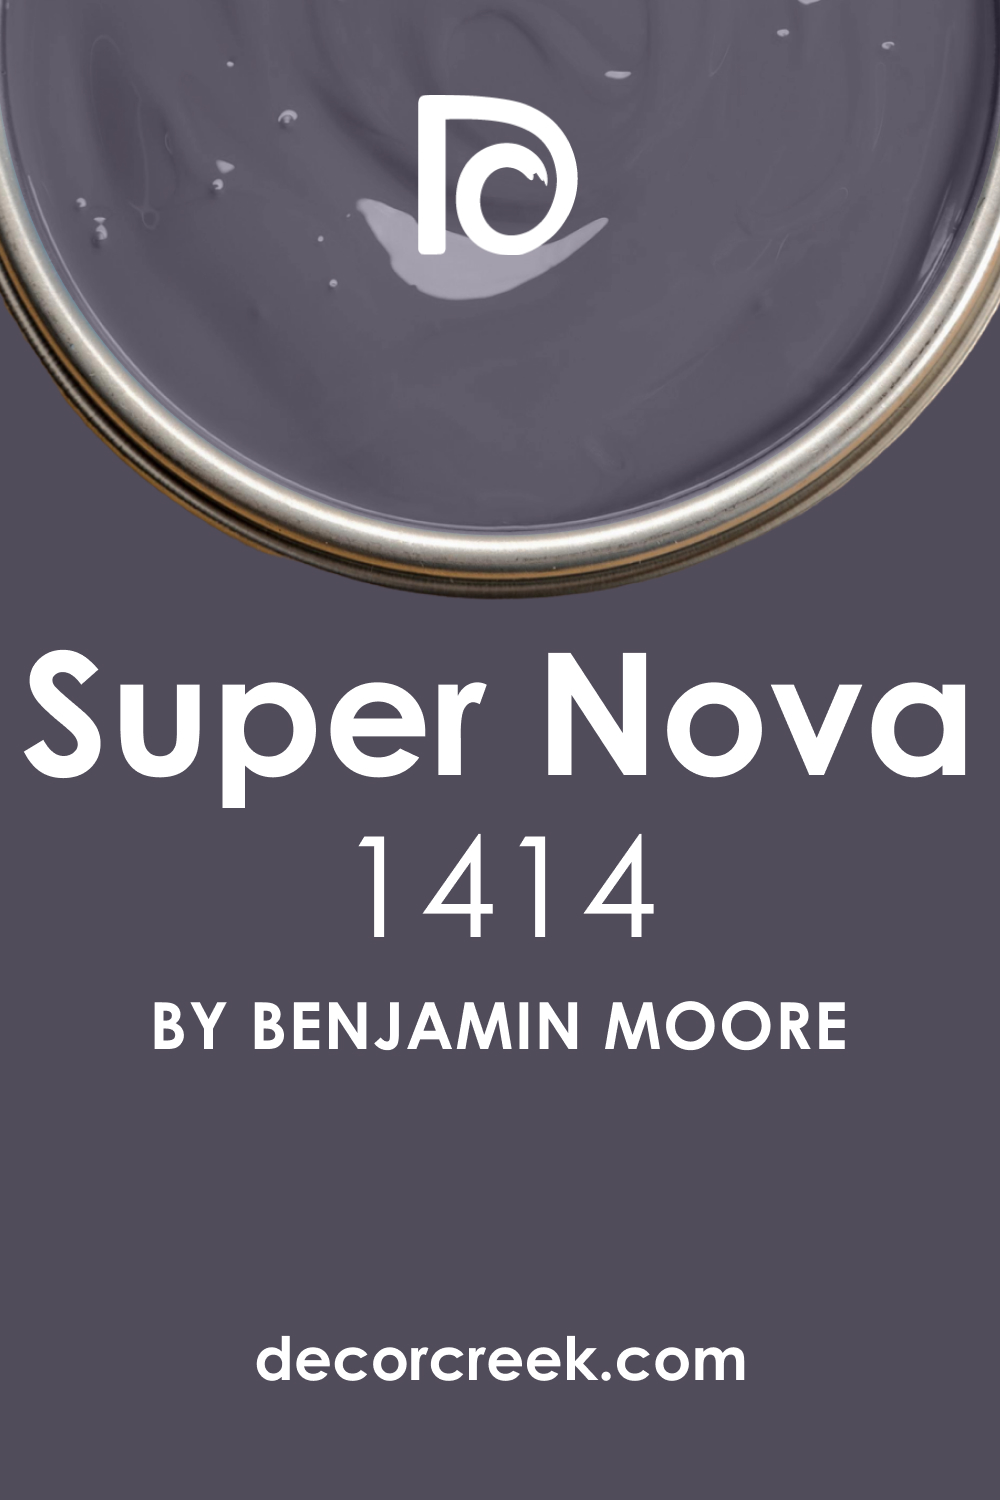 What Color Is Super Nova 1414?